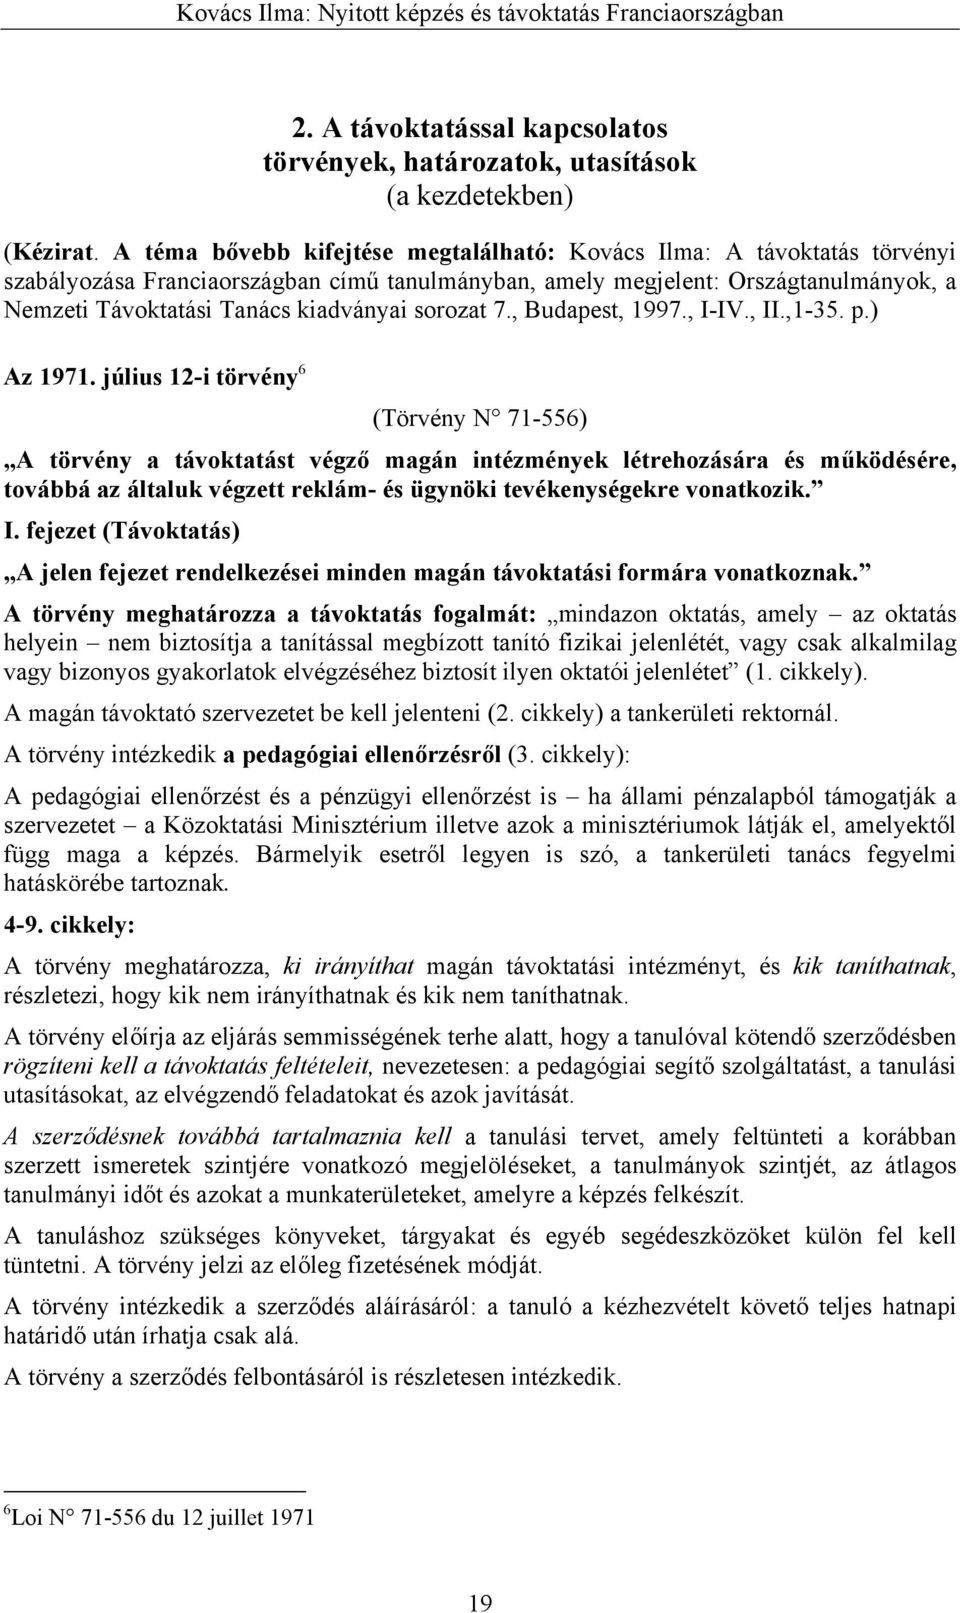 sorozat 7., Budapest, 1997., I-IV., II.,1-35. p.) A törvény a távoktatást végző magán intézmények létrehozására és működésére, továbbá az általuk végzett reklám- és ügynöki tevékenységekre vonatkozik.